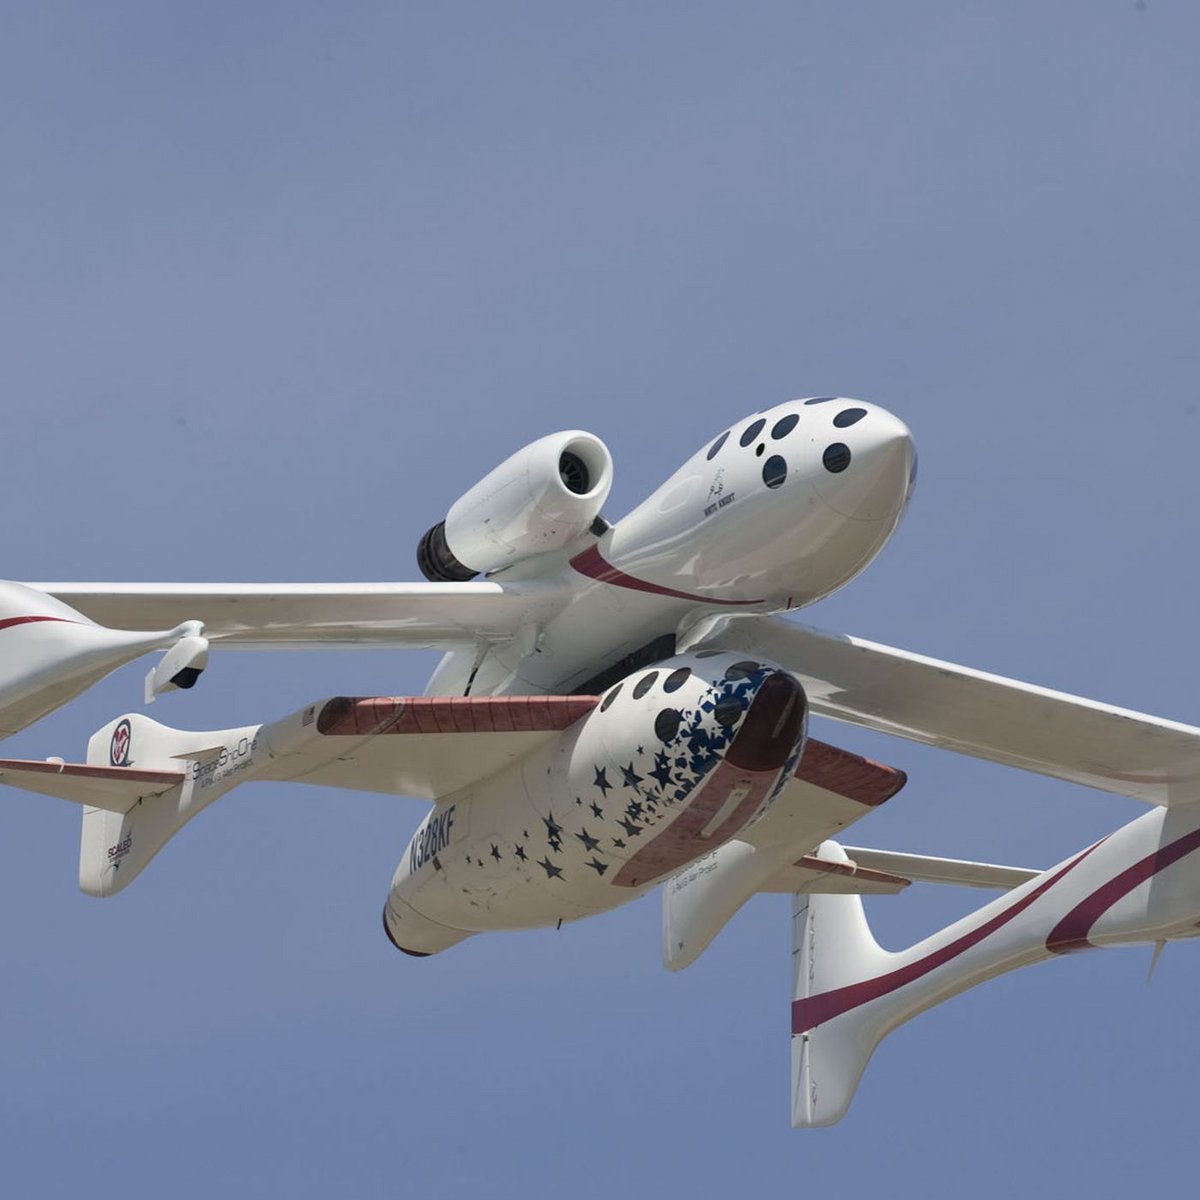 Le duo avion porteur/avion spatial largué le plus exotique de l'histoire. Crédits : Scaled Composites